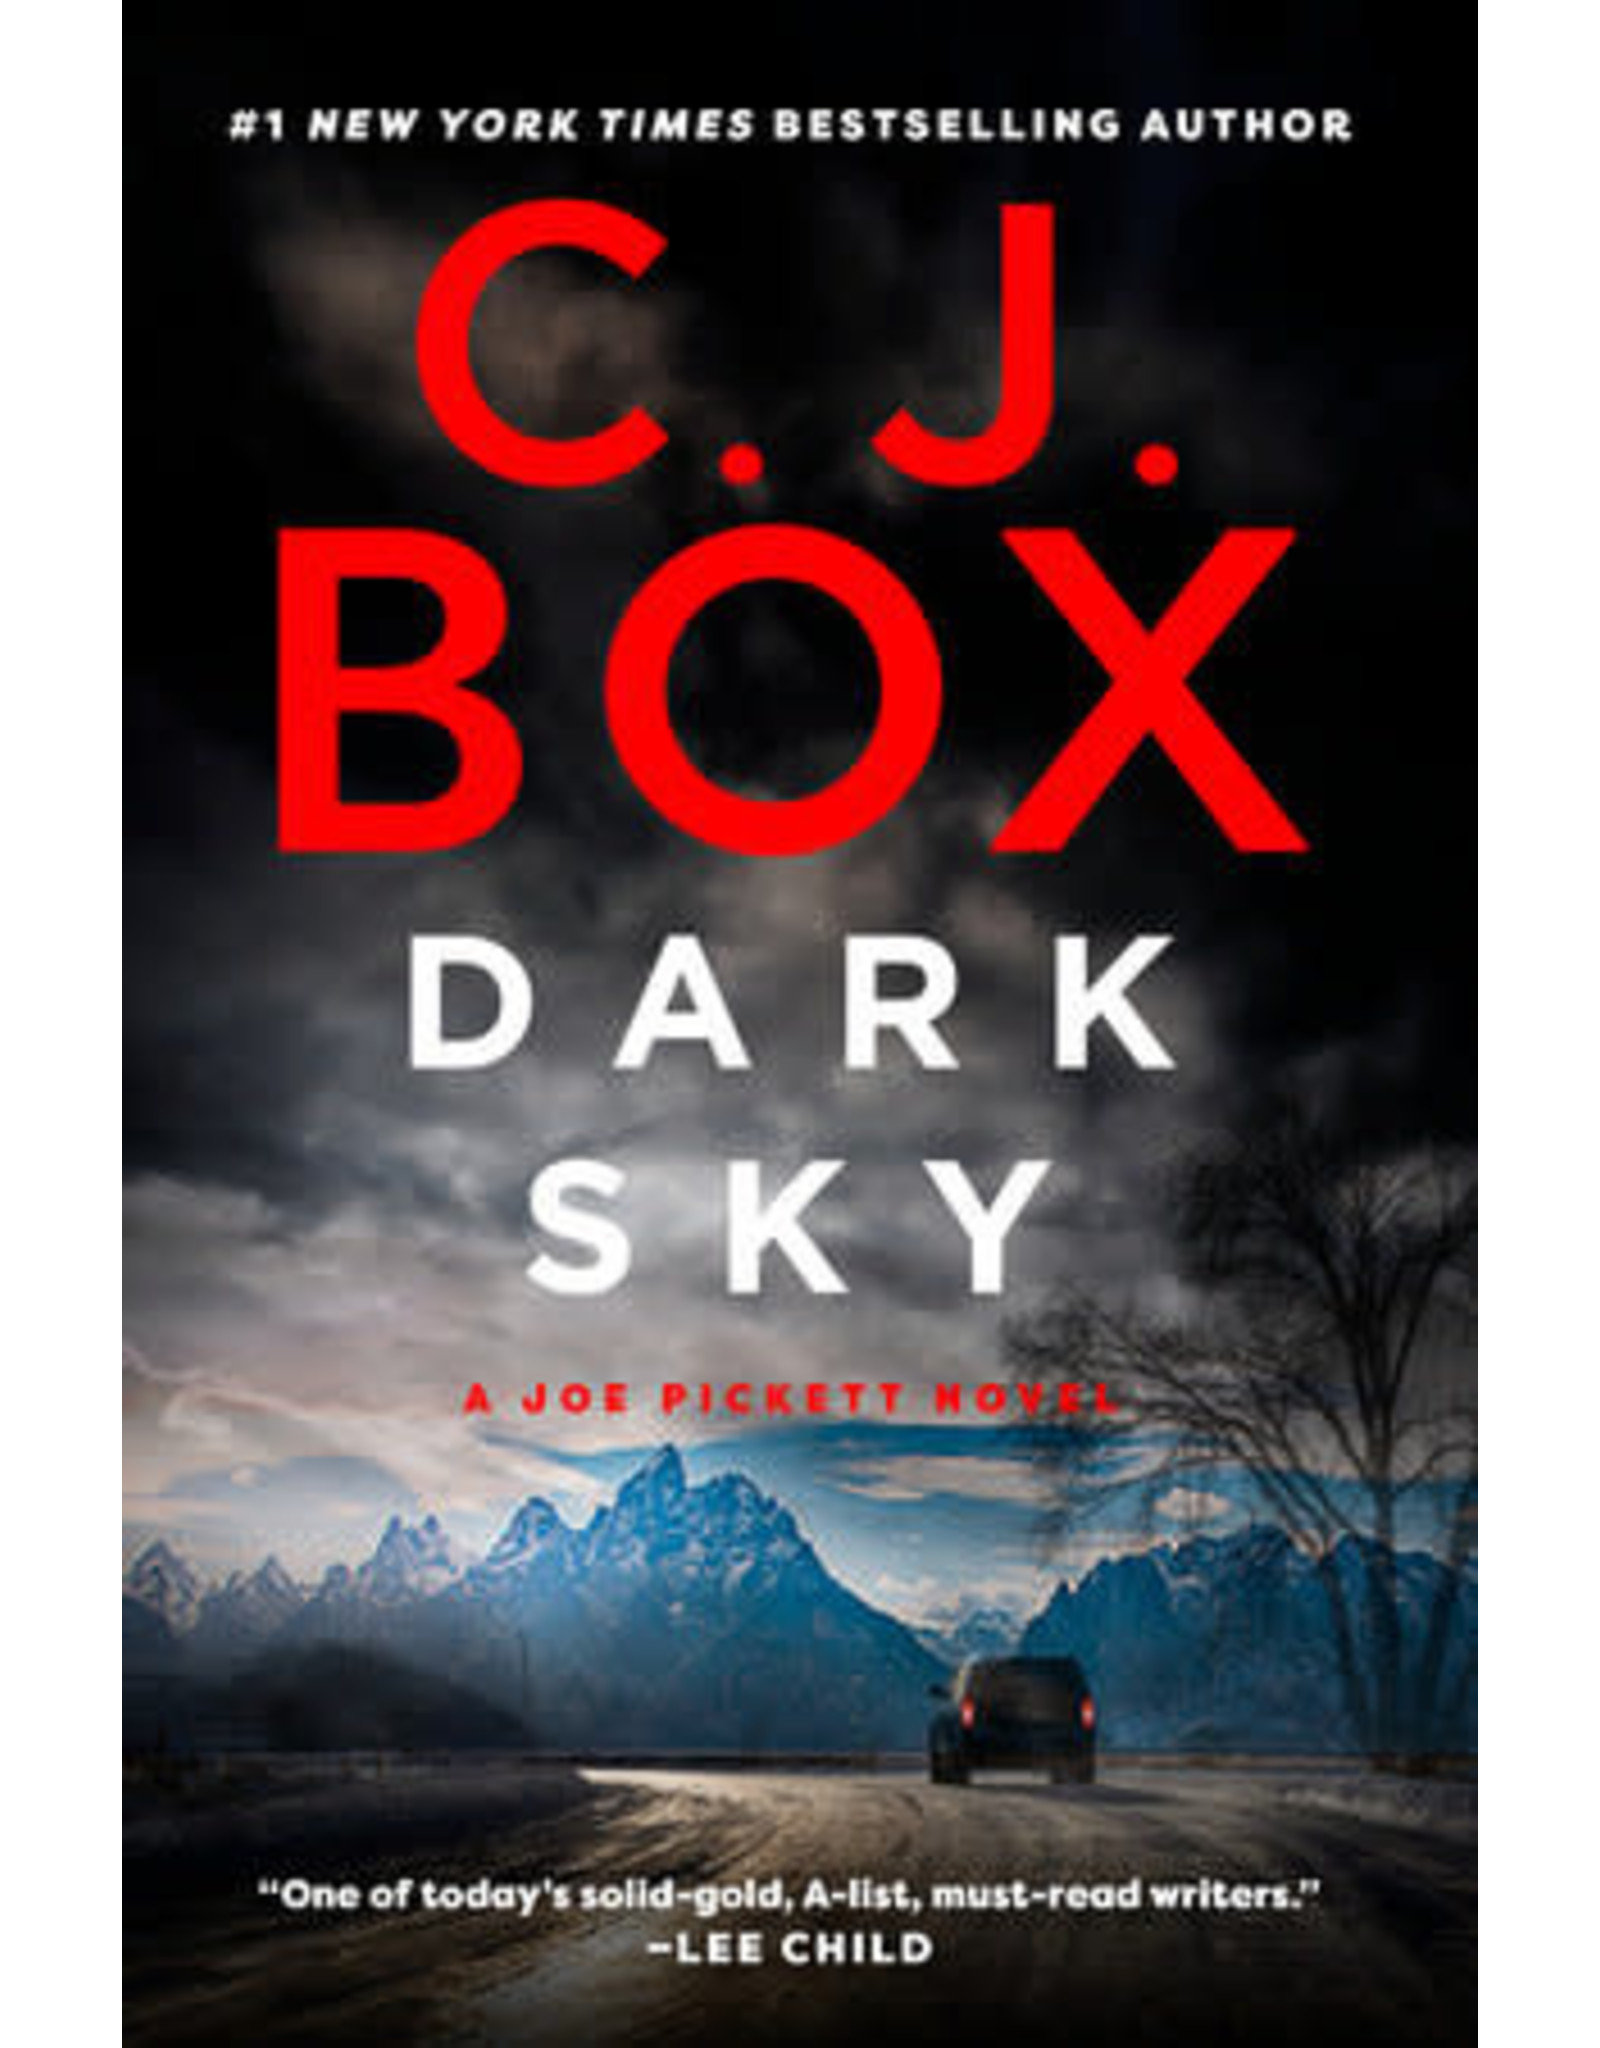 C. J. Box Dark Sky - A Joe Pickett Novel by C. J. Box - Large Print